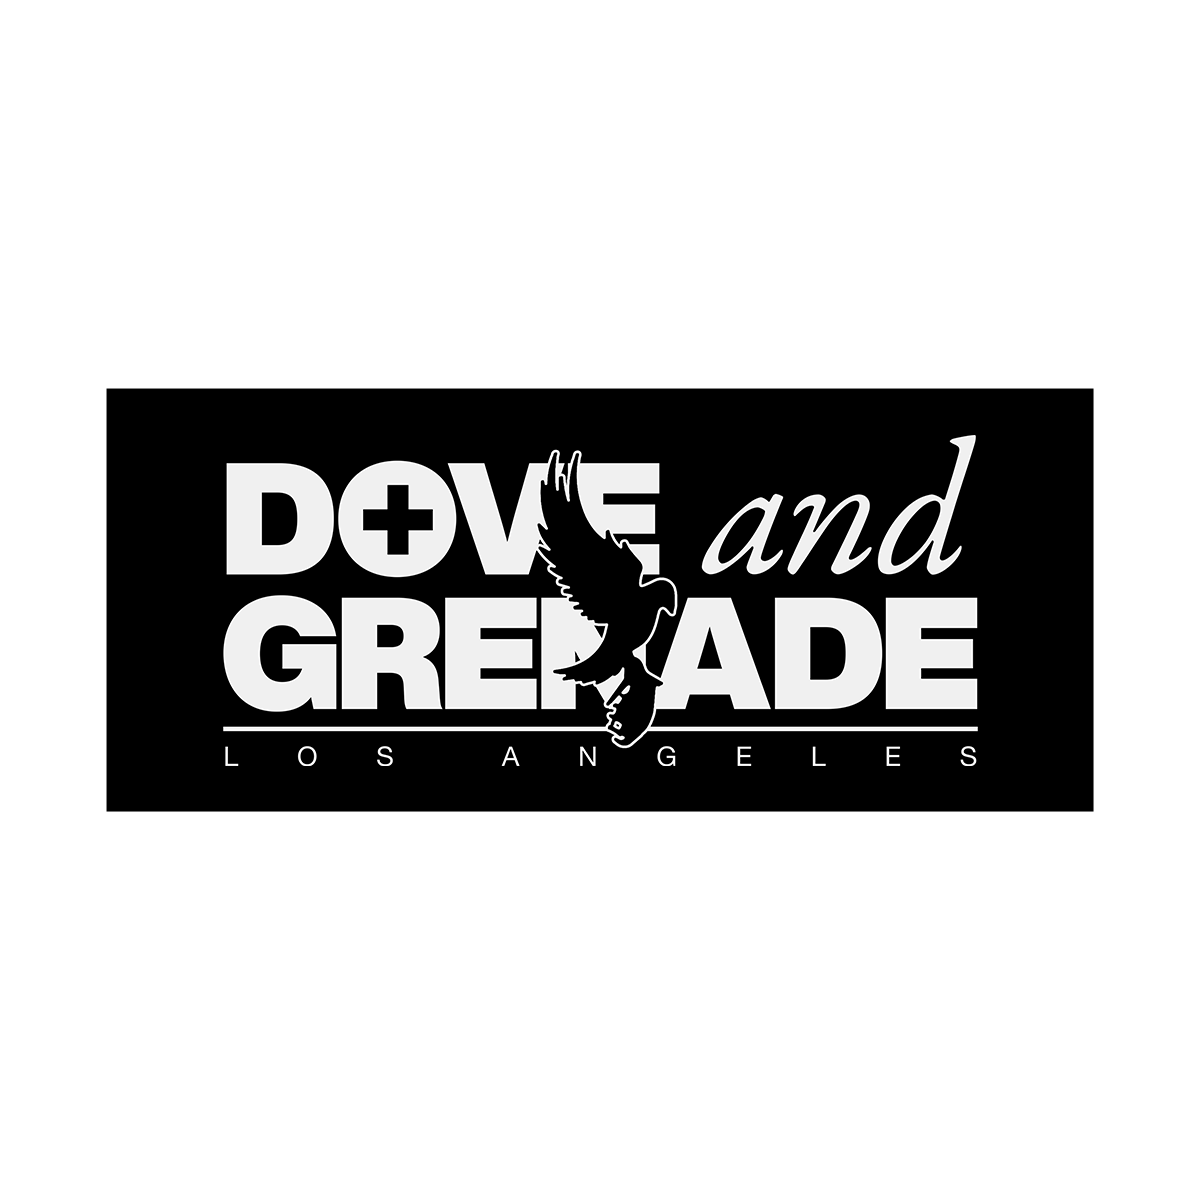 Dove & Grenade Bumper Sticker (Black)